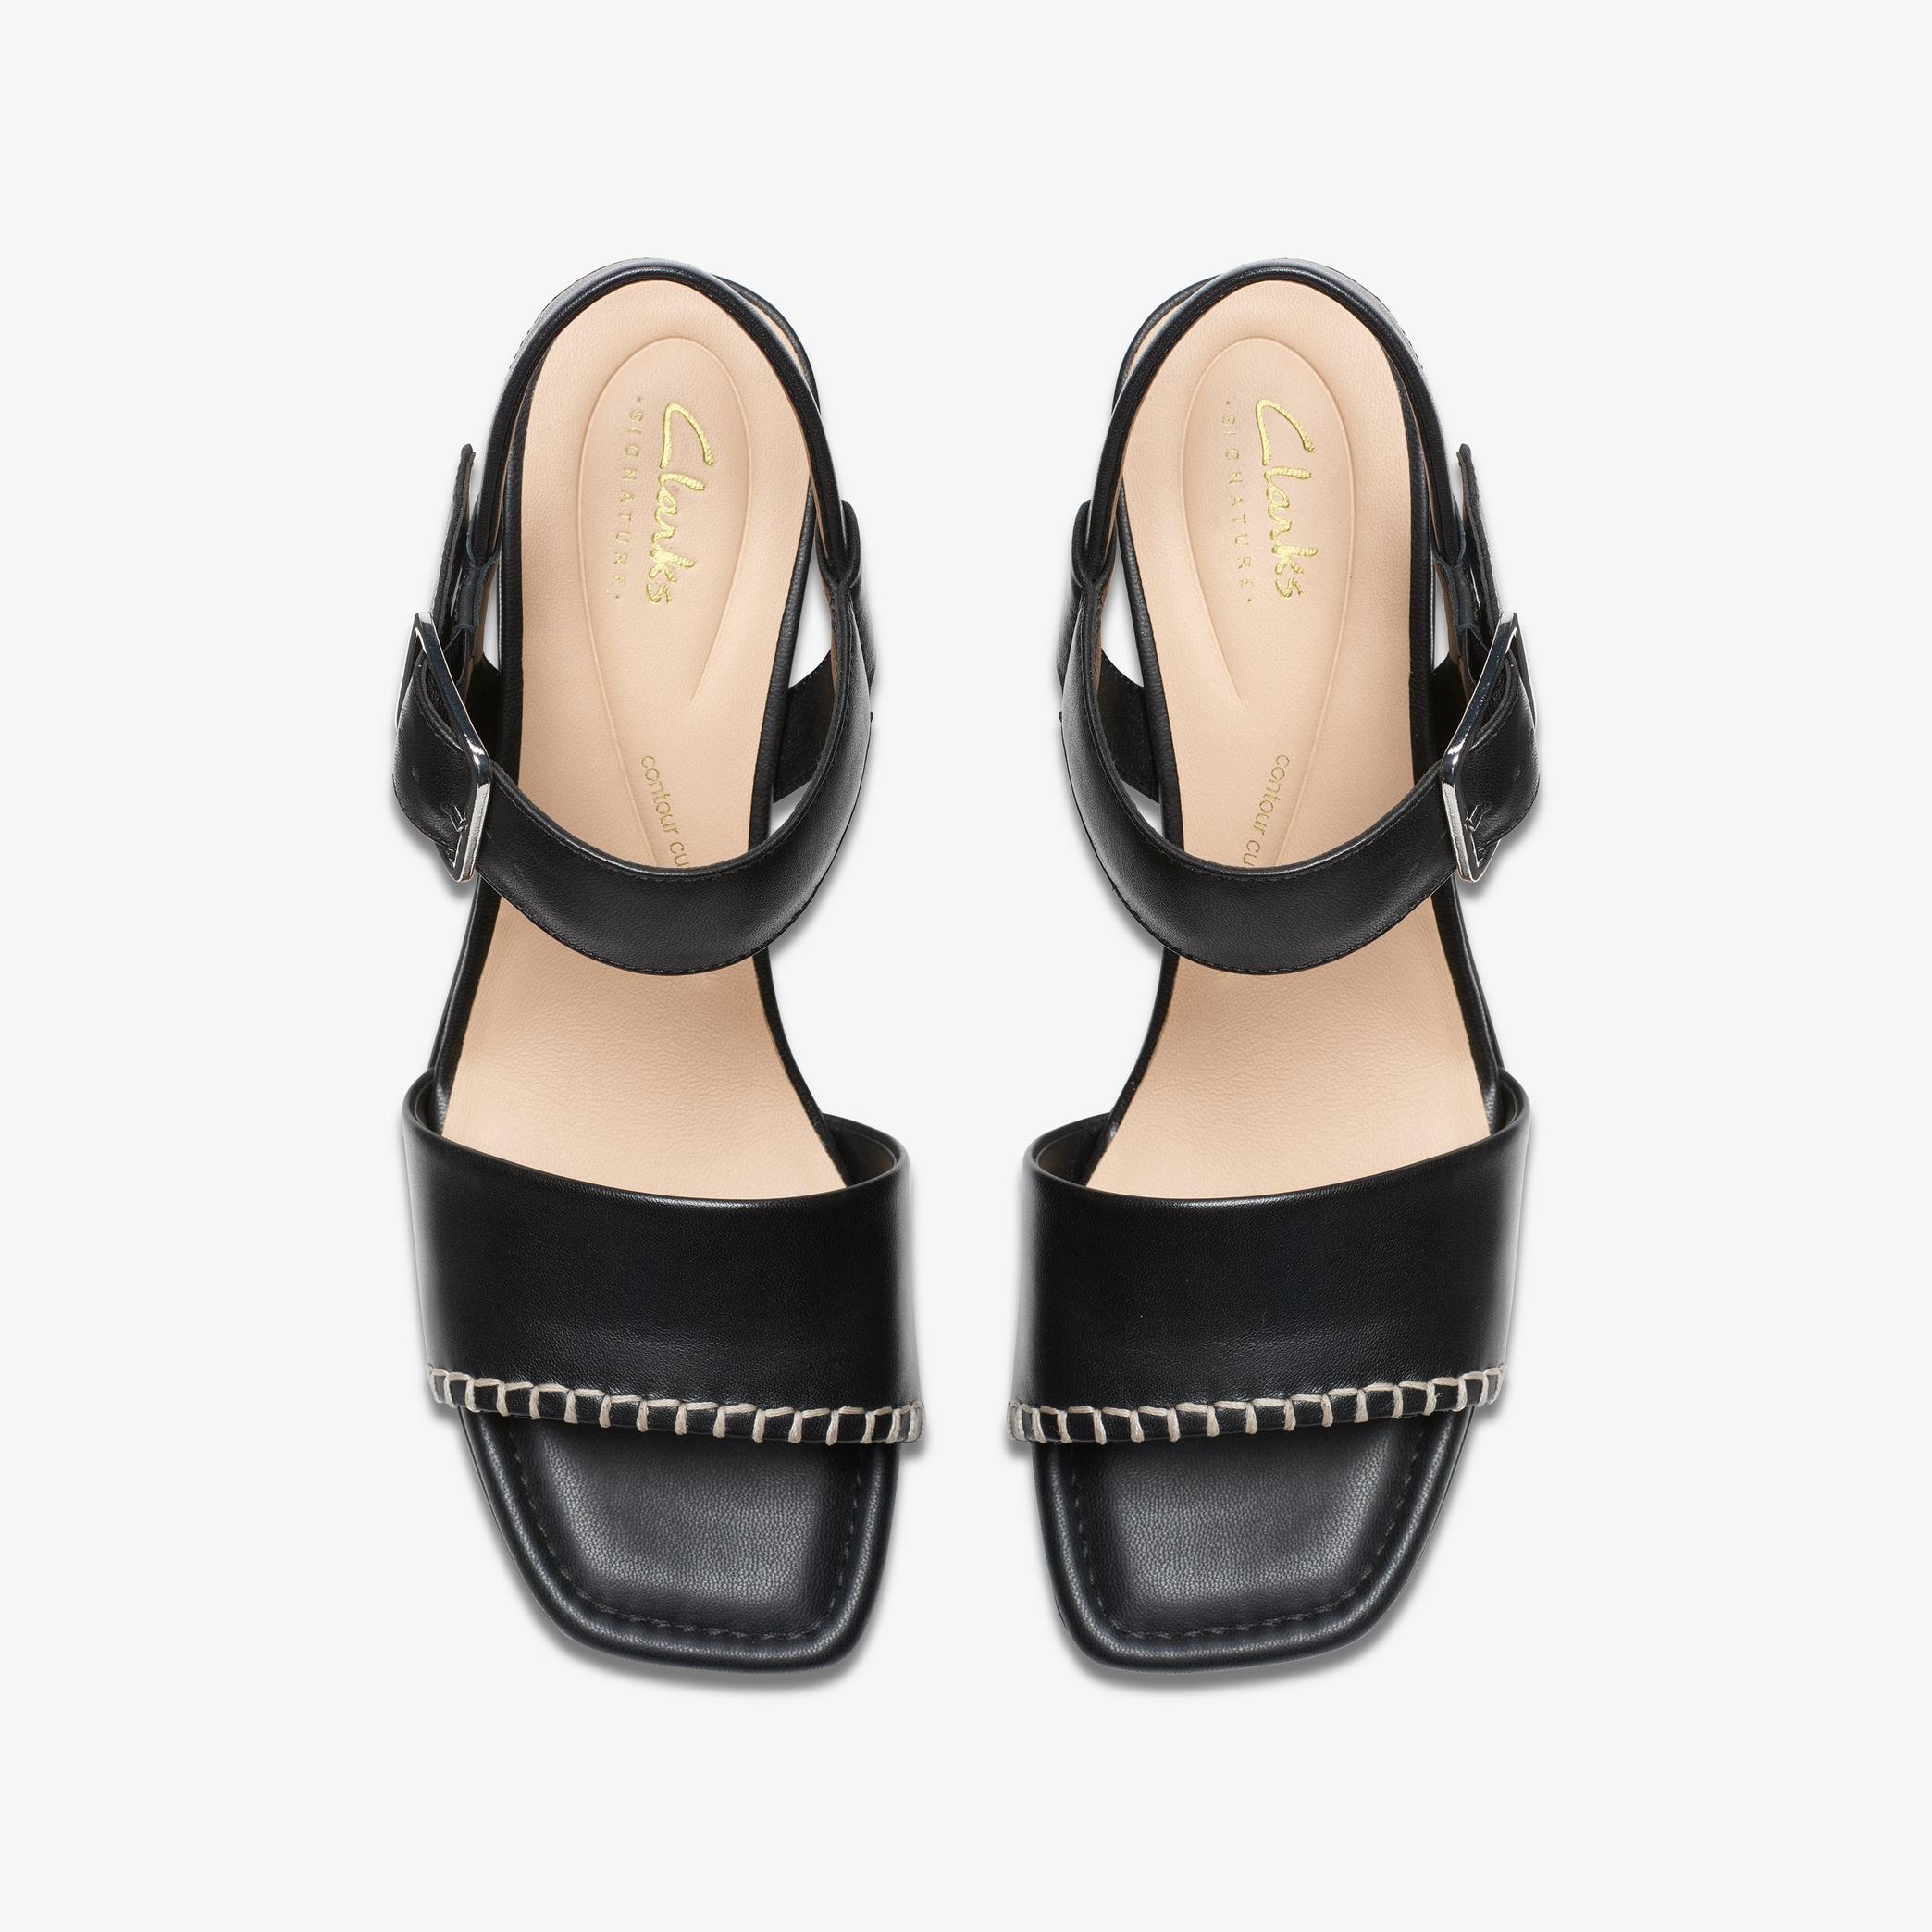 Sandales à talon en cuir noir avec boucle Siara65, vue 6 de 6